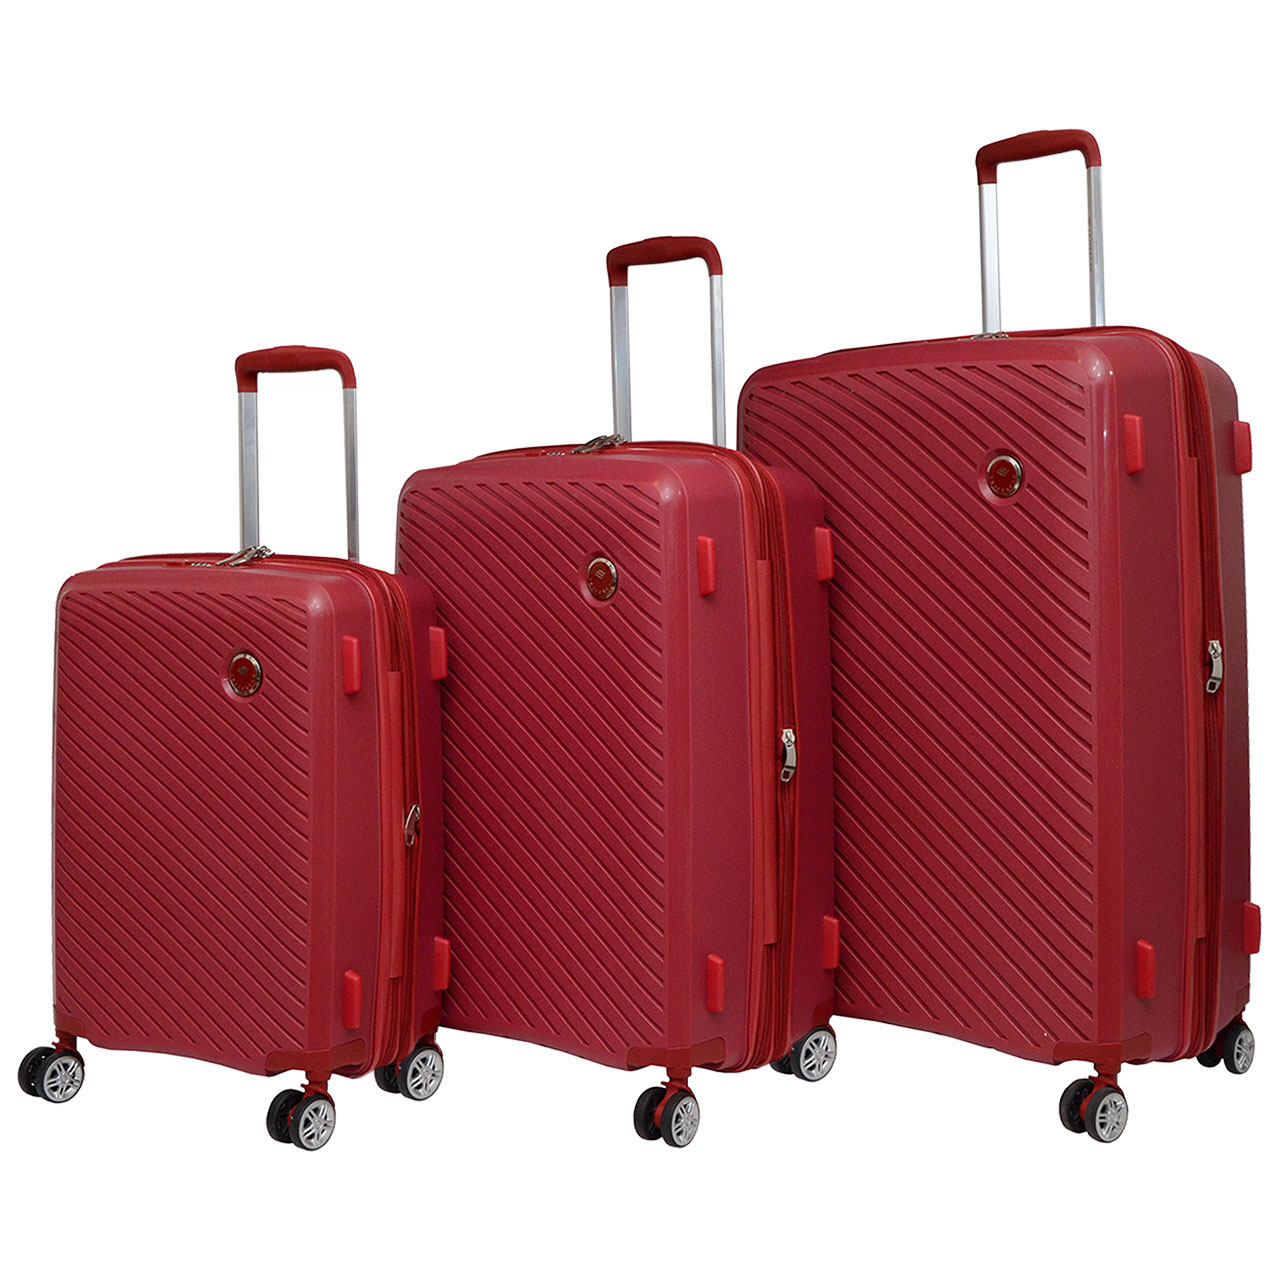 مجموعه سه عددی چمدان تراول کار مدل PP02